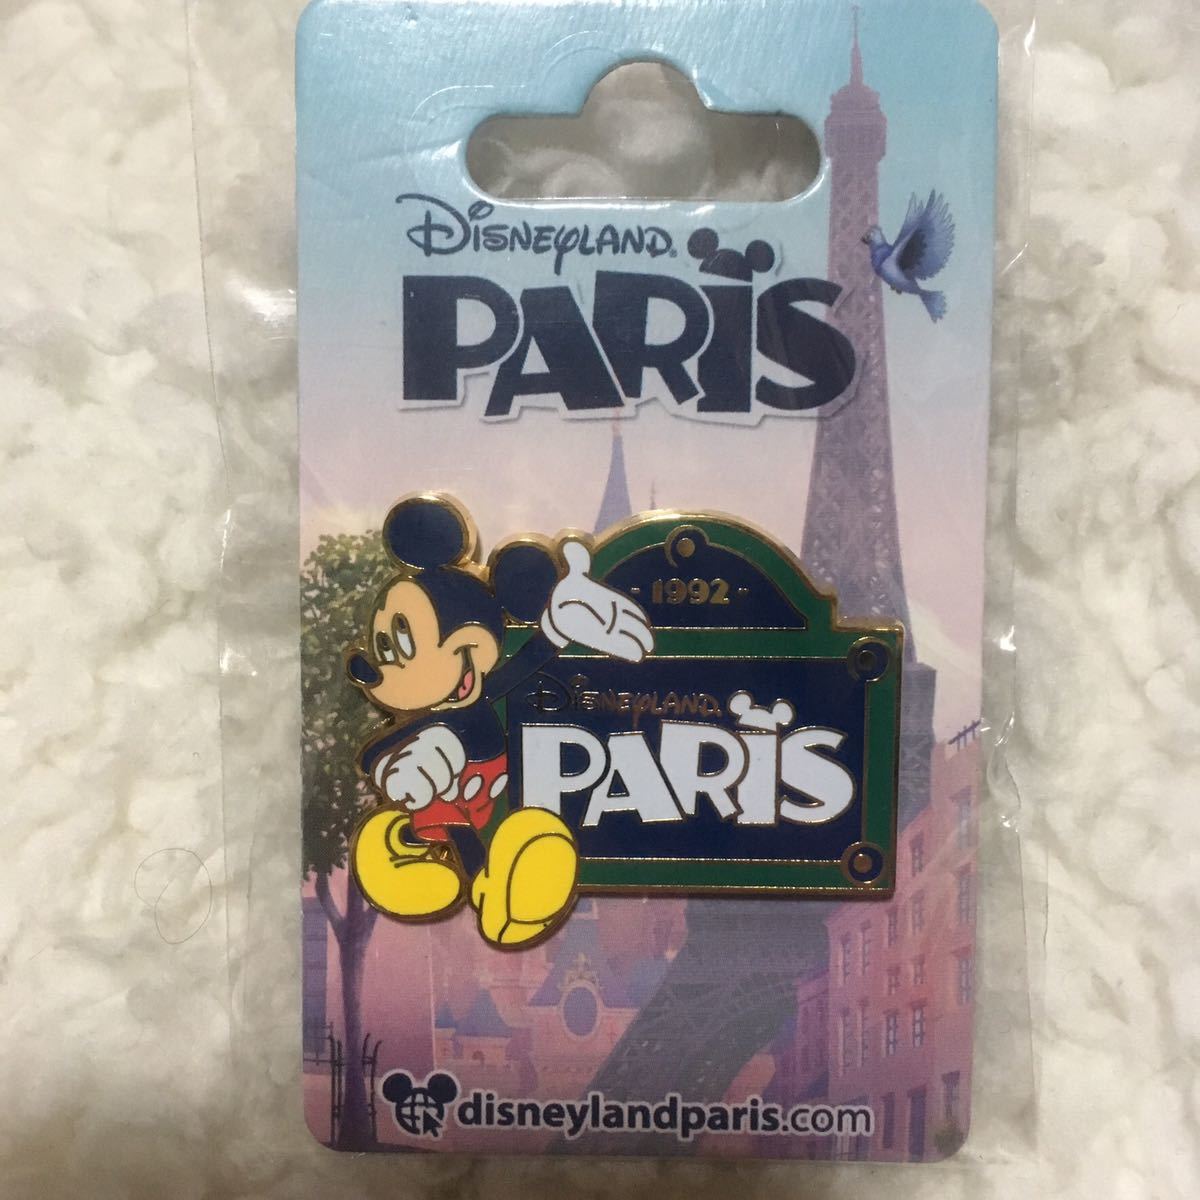 * новый товар нераспечатанный очень редкий с логотипом покупка задний есть Disney Land Париж ограничение значок Mickey eferu. за границей PARIS брошь 